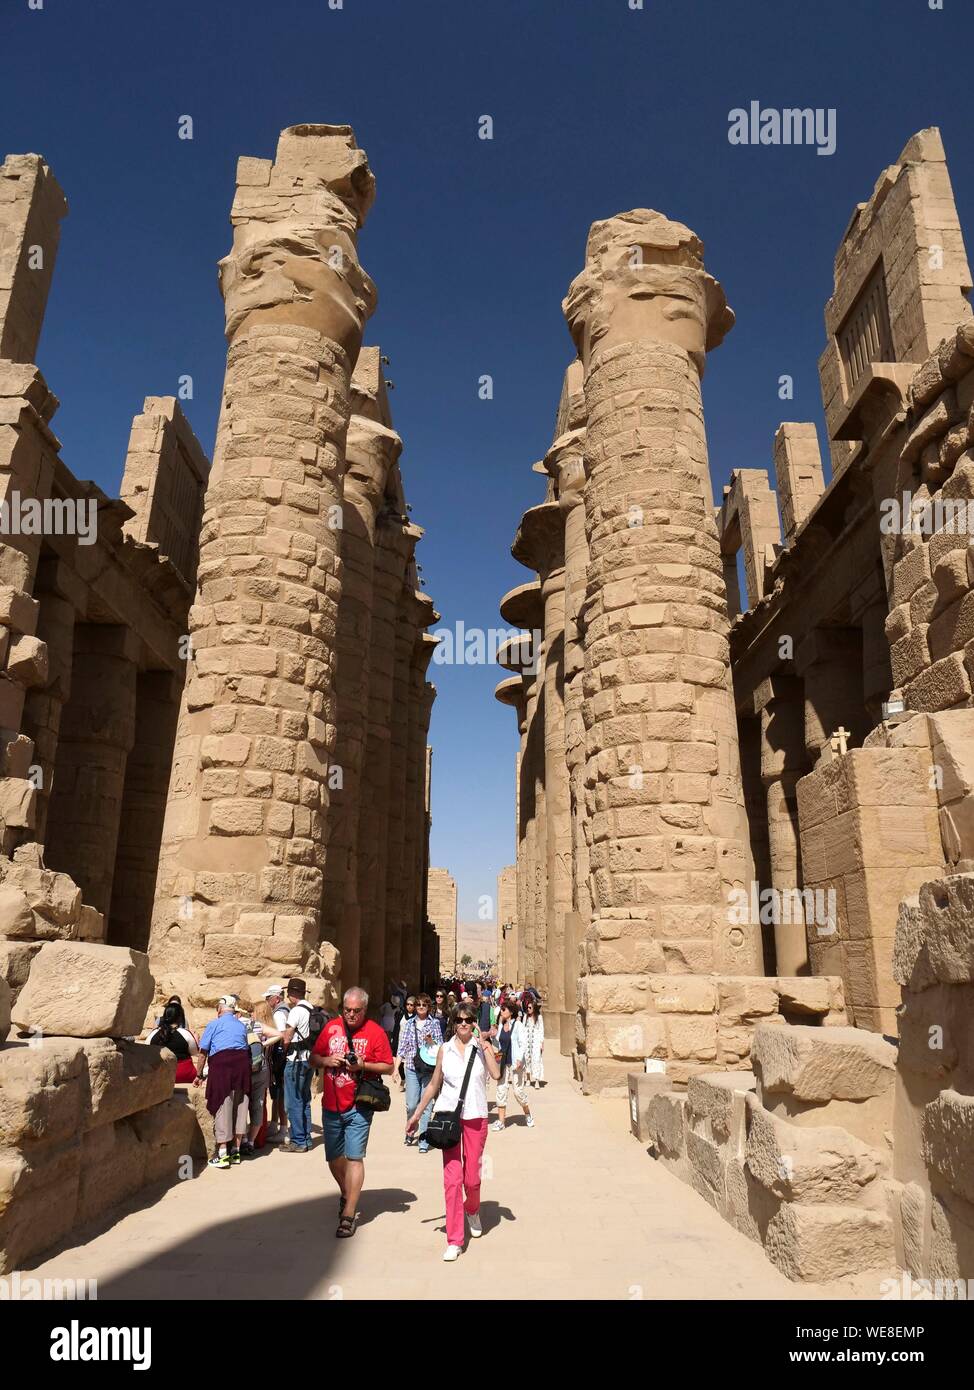 Egitto Alto Egitto, Valle del Nilo, Luxor, Karnak, il Sito Patrimonio Mondiale dell'UNESCO, il tempio dedicato al dio Amon, il grande hypostyle hall Foto Stock